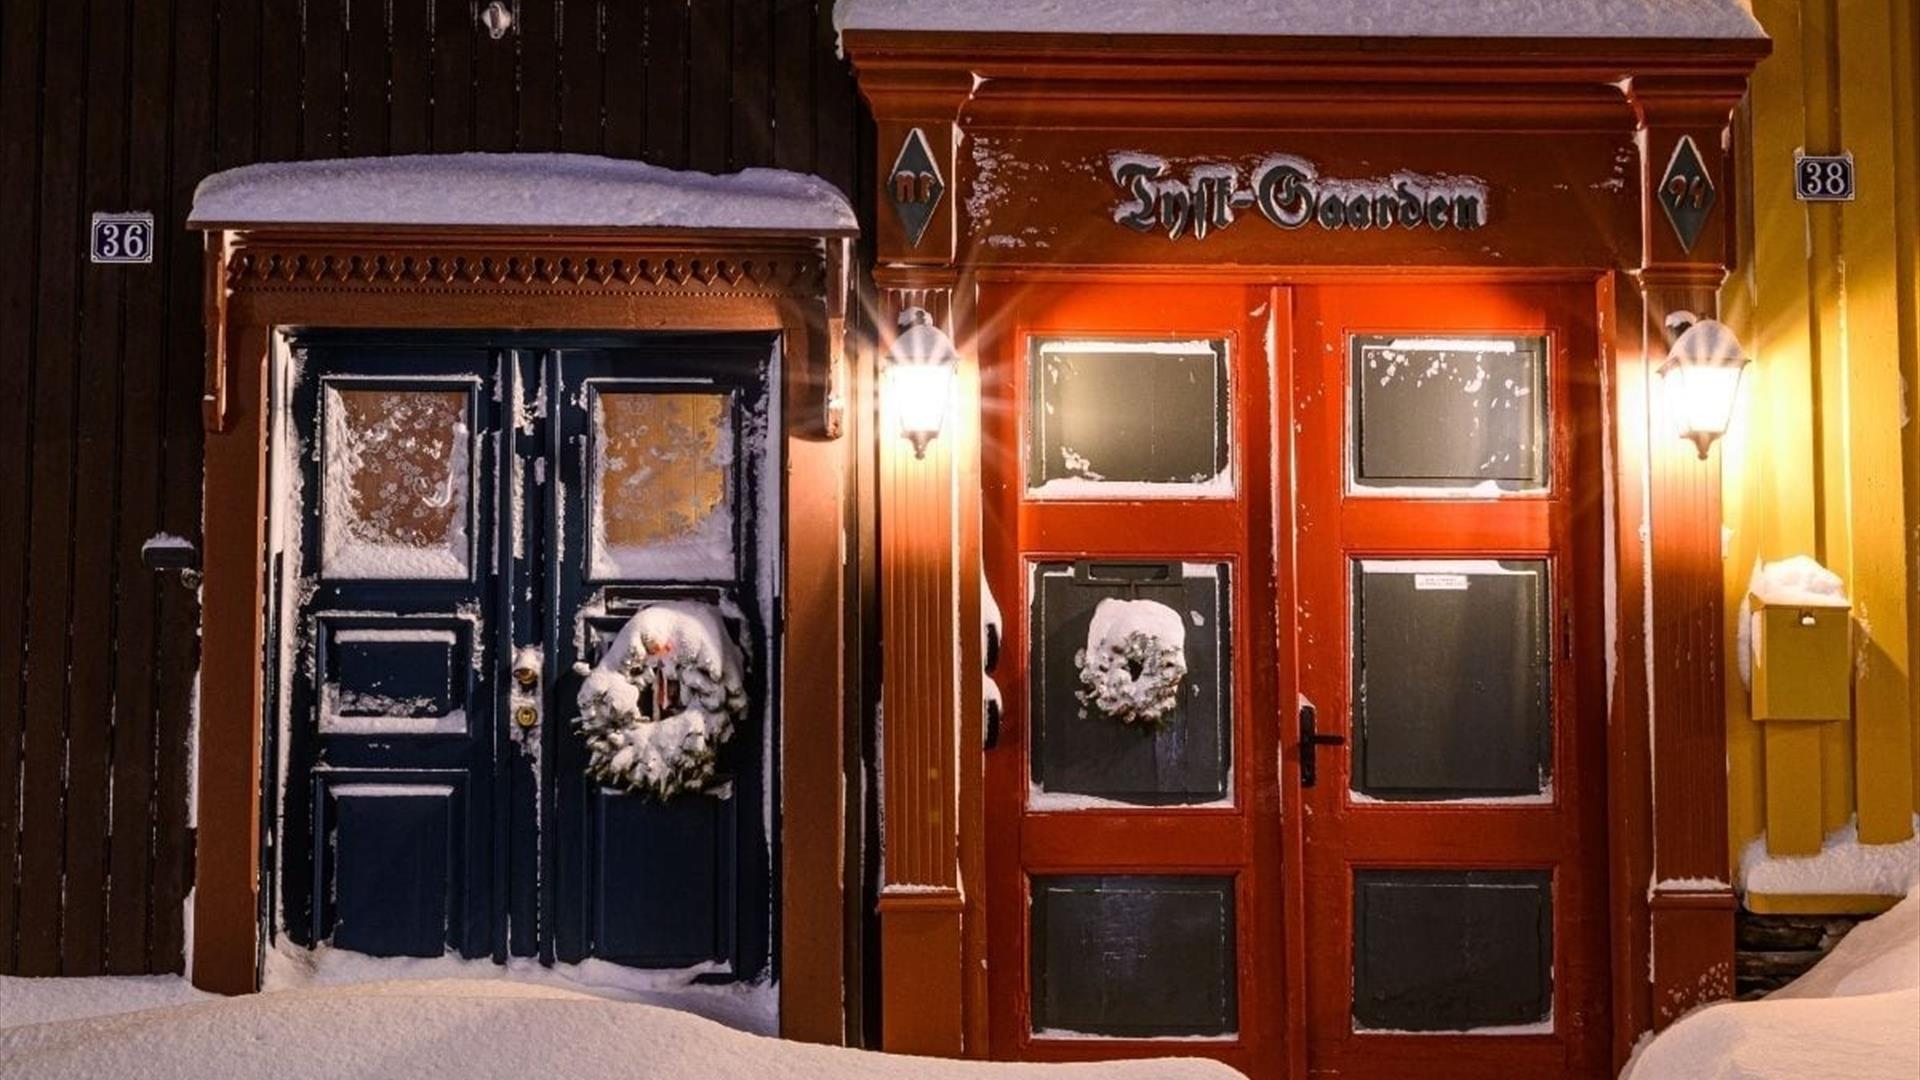 Julestemning på Røros med snø på gamle husvegger og julekranser på dørene